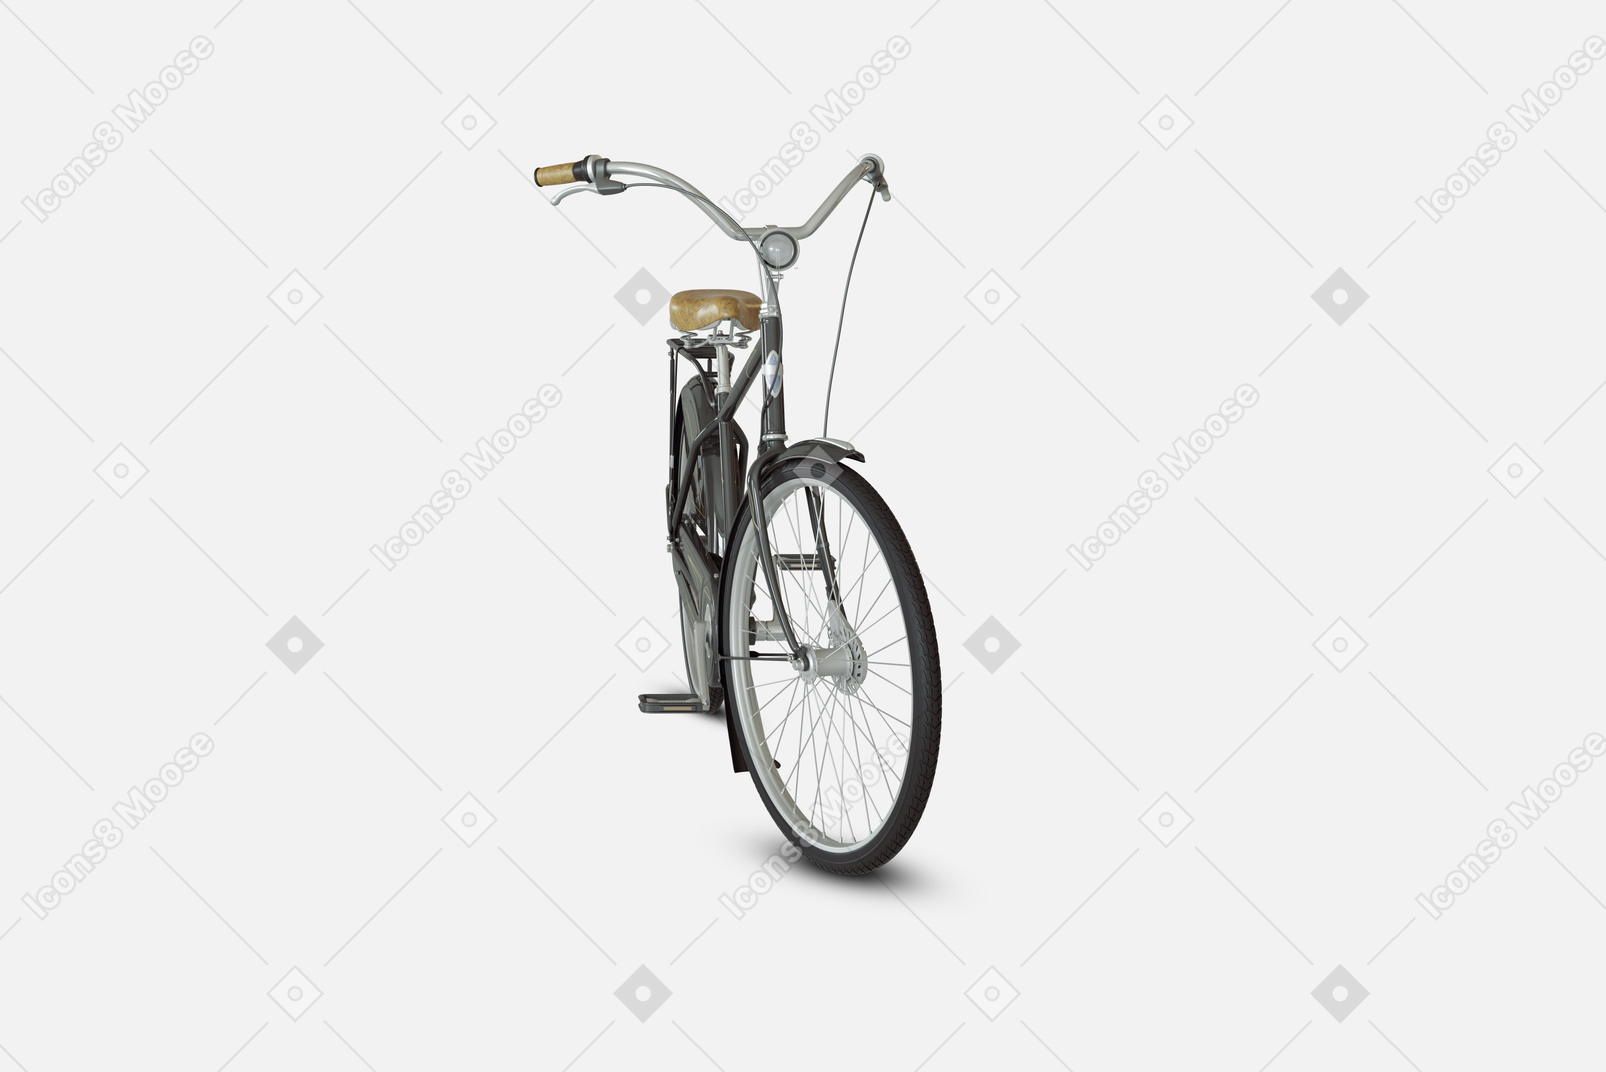 Vélo de ville noir avec freins avant et arrière et un cadre spécial